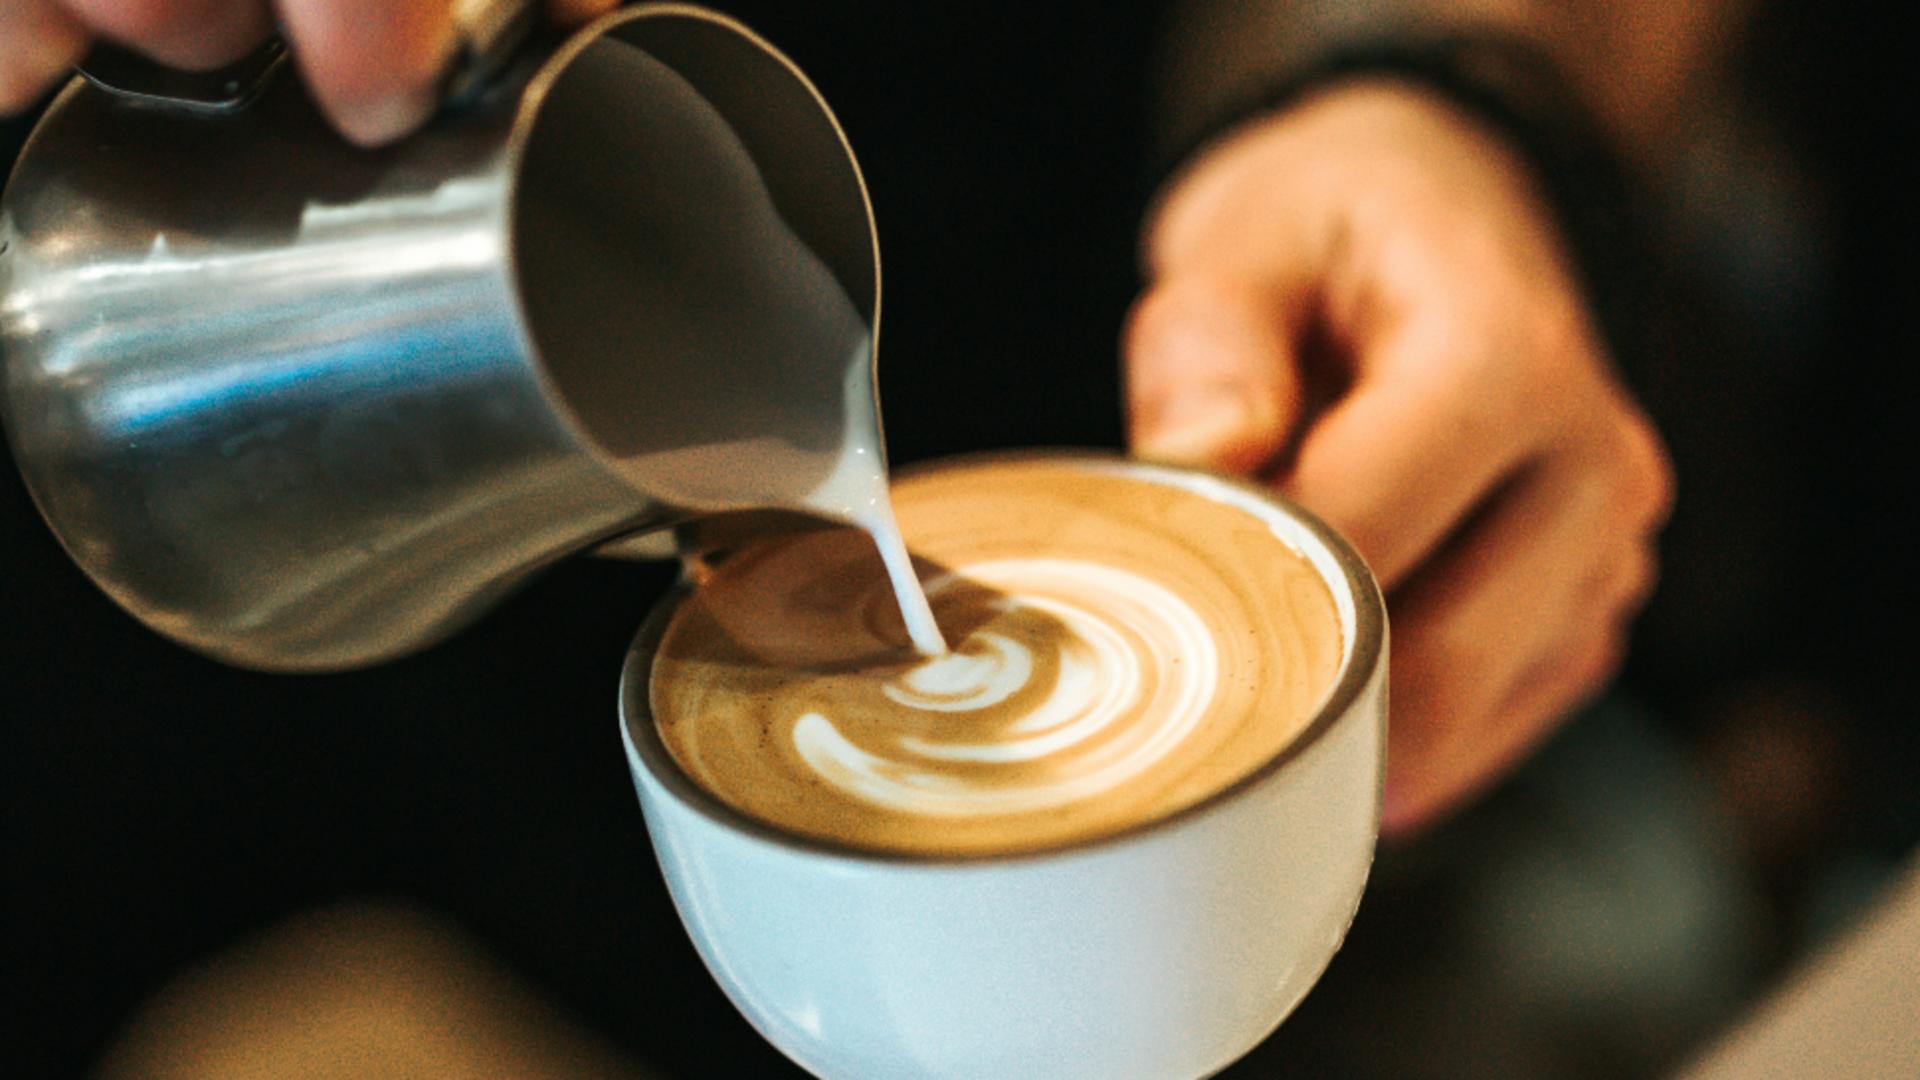 Pericolele ascunse din spatele cafelei cu lapte: semnalul de alarmă tras de un cunoscut neurolog